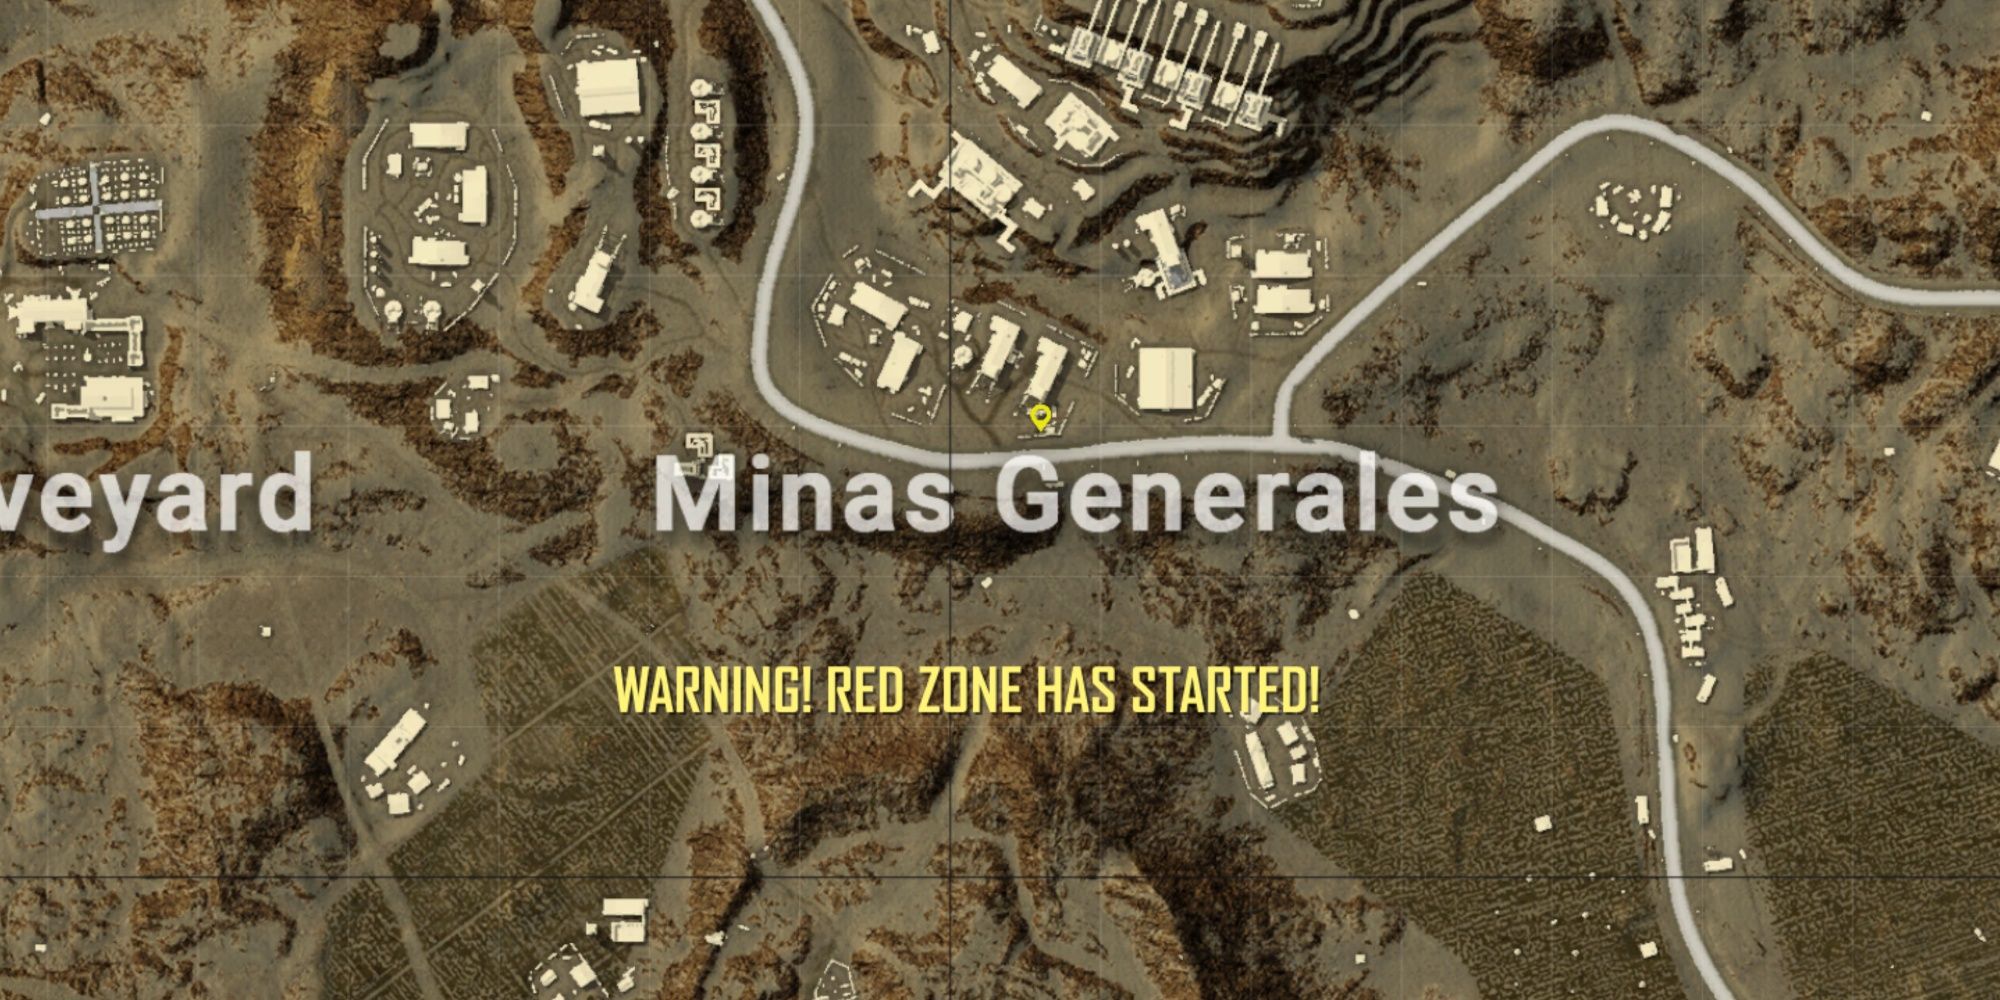 Minas Generales